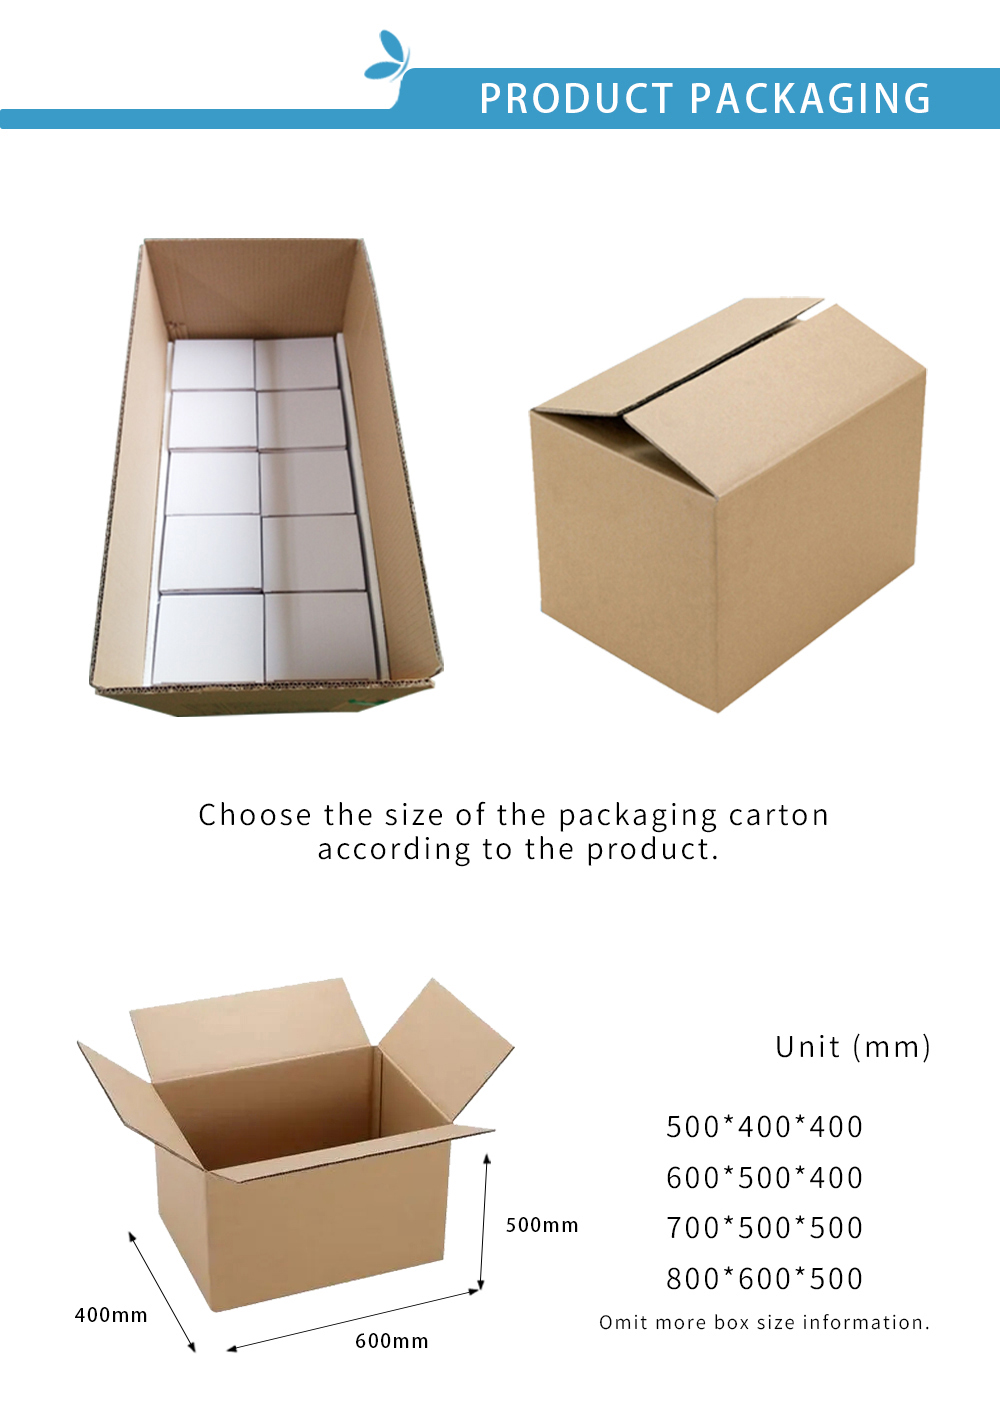 2. Lip mud packing box